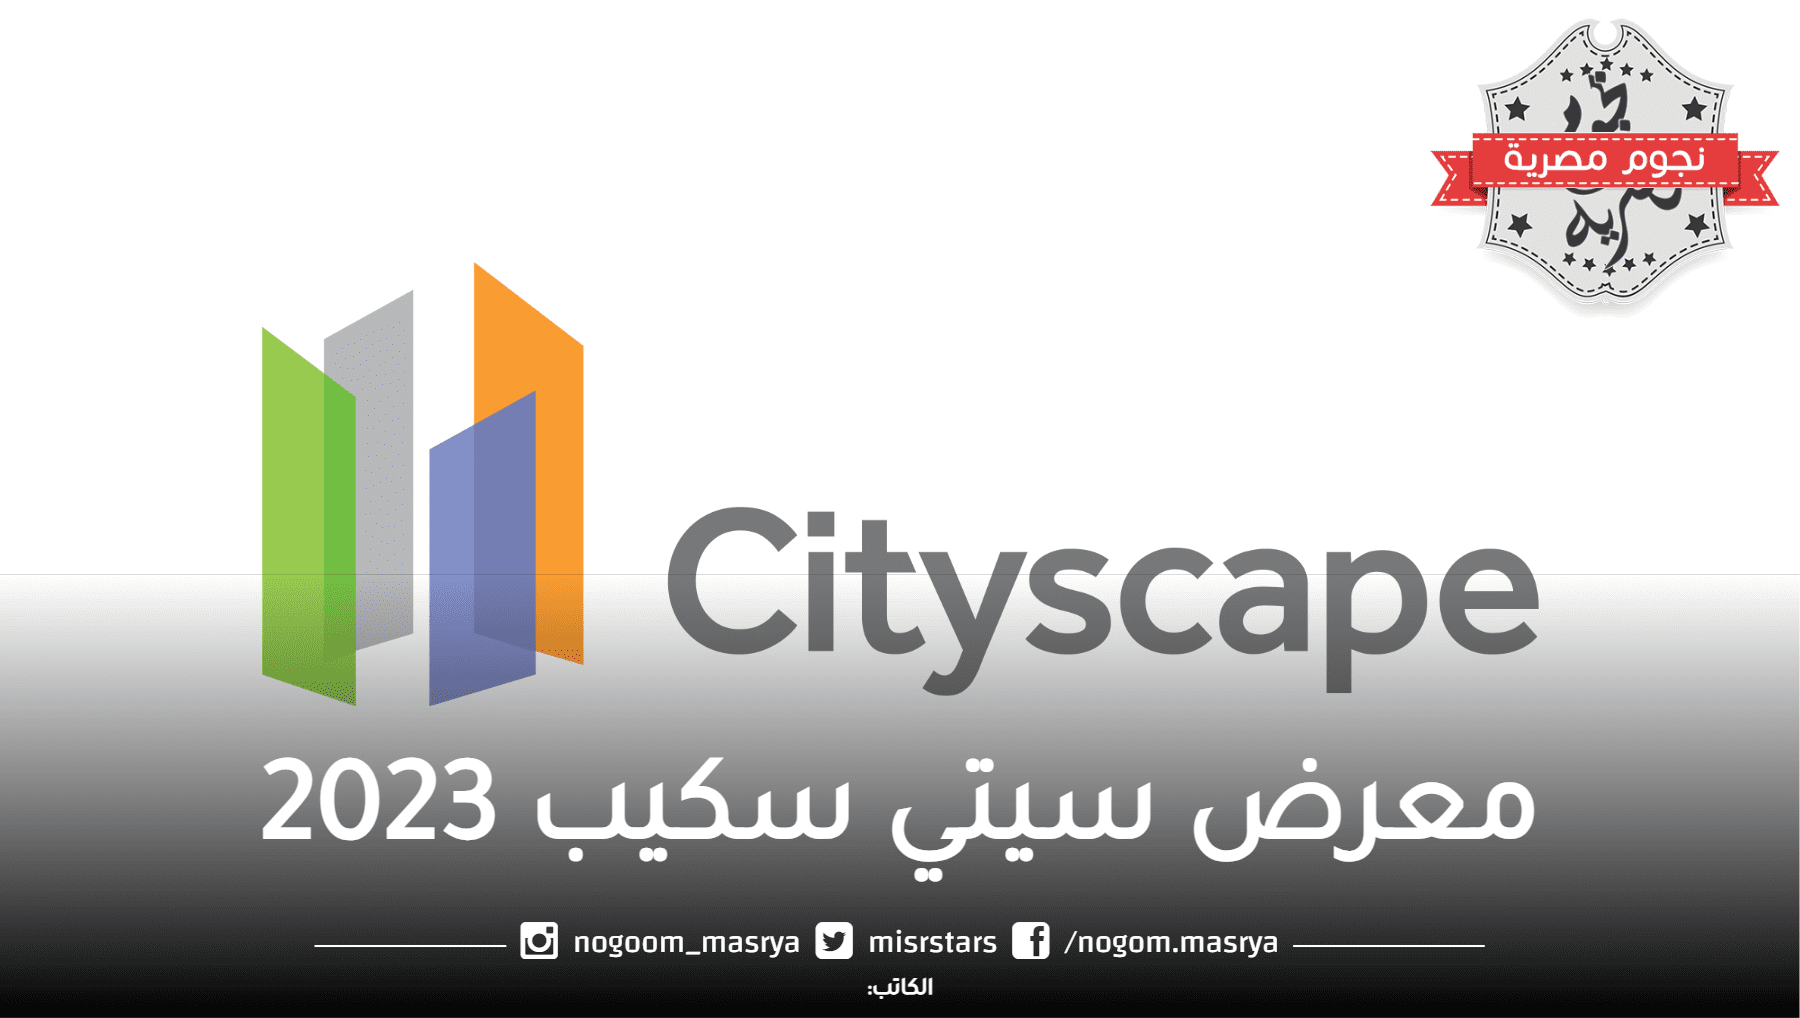 تفاصيل حول معرض سيتي سكيب مصر 2023 والفوائد التي تحصل عليها الشركات والزوار.